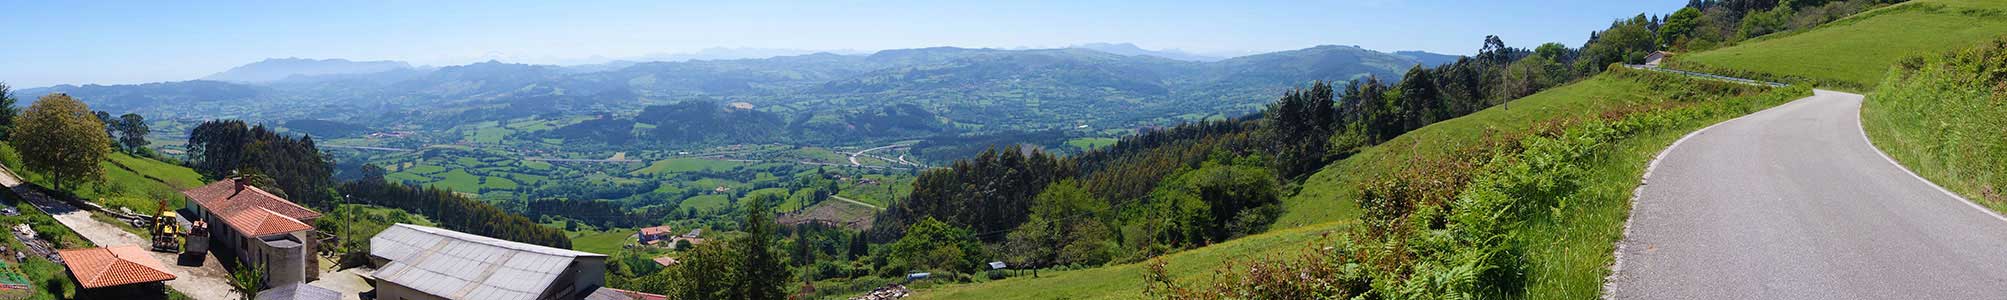 Panorama-Blick über die bergige Küstenlandschaft von Asturgien